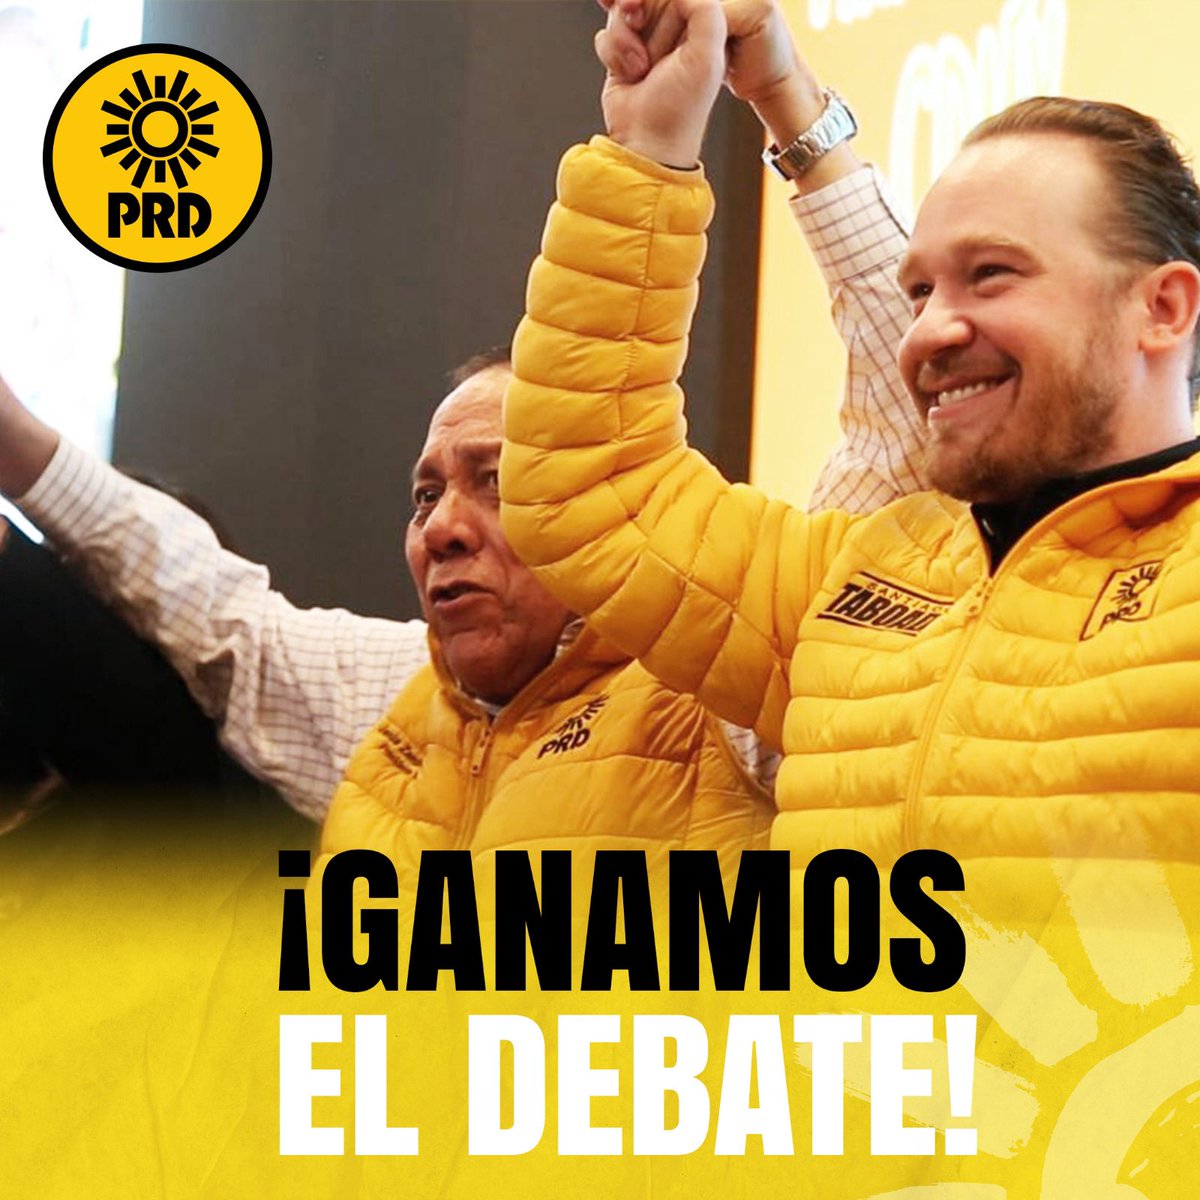 No hay duda que @STaboadaMx ganó 3 de 3 #DebateChilango Será nuestro próximo jefe de gobierno ¡Vamos a Ganar este 2 de junio! #TaboadaJefeDeGobiernoCDMX #ElJefeTaboada #SomosPRD #ElCambioViene